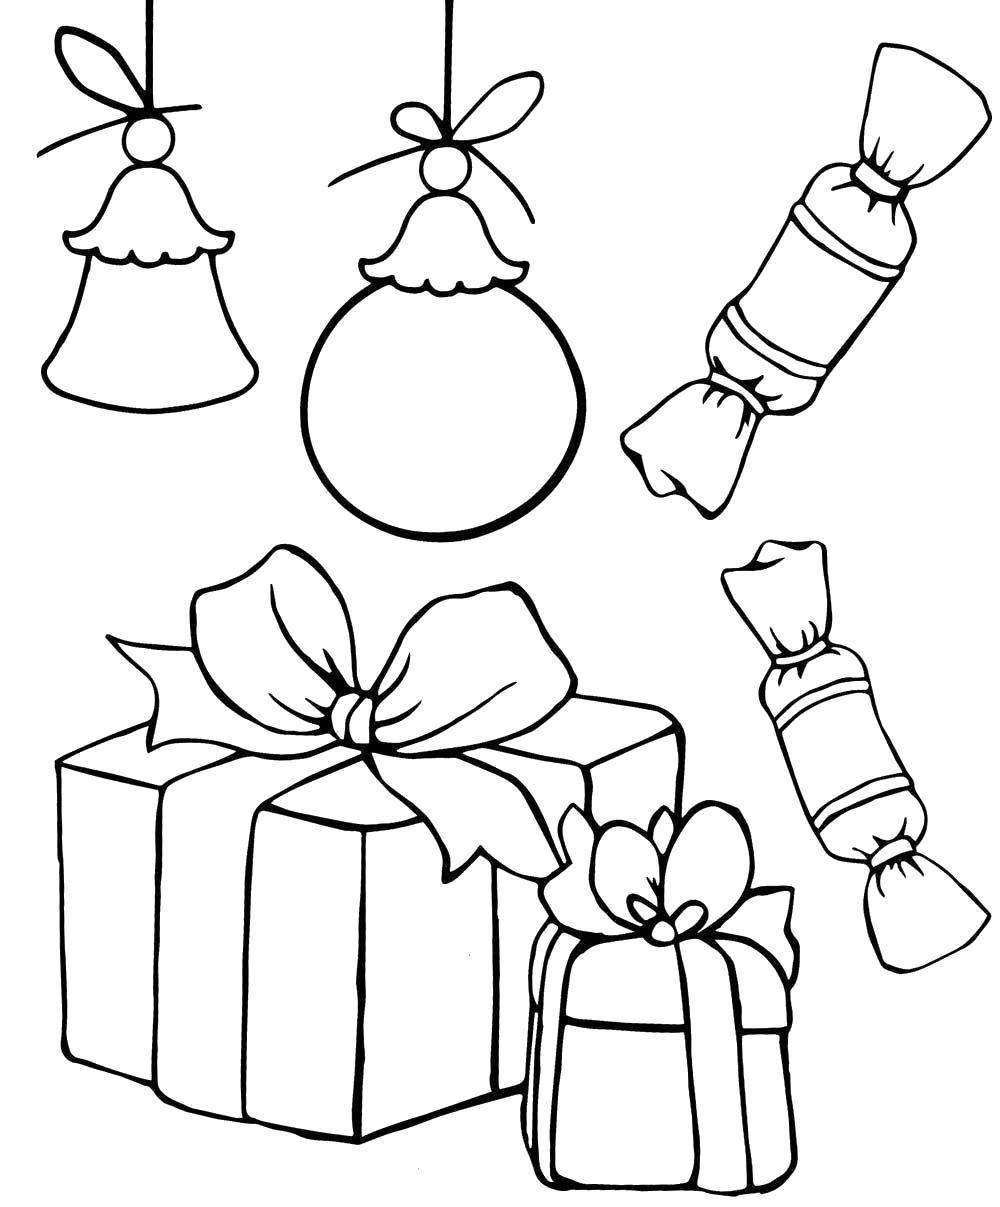 Раскраска на тему подарки для праздника (праздник)